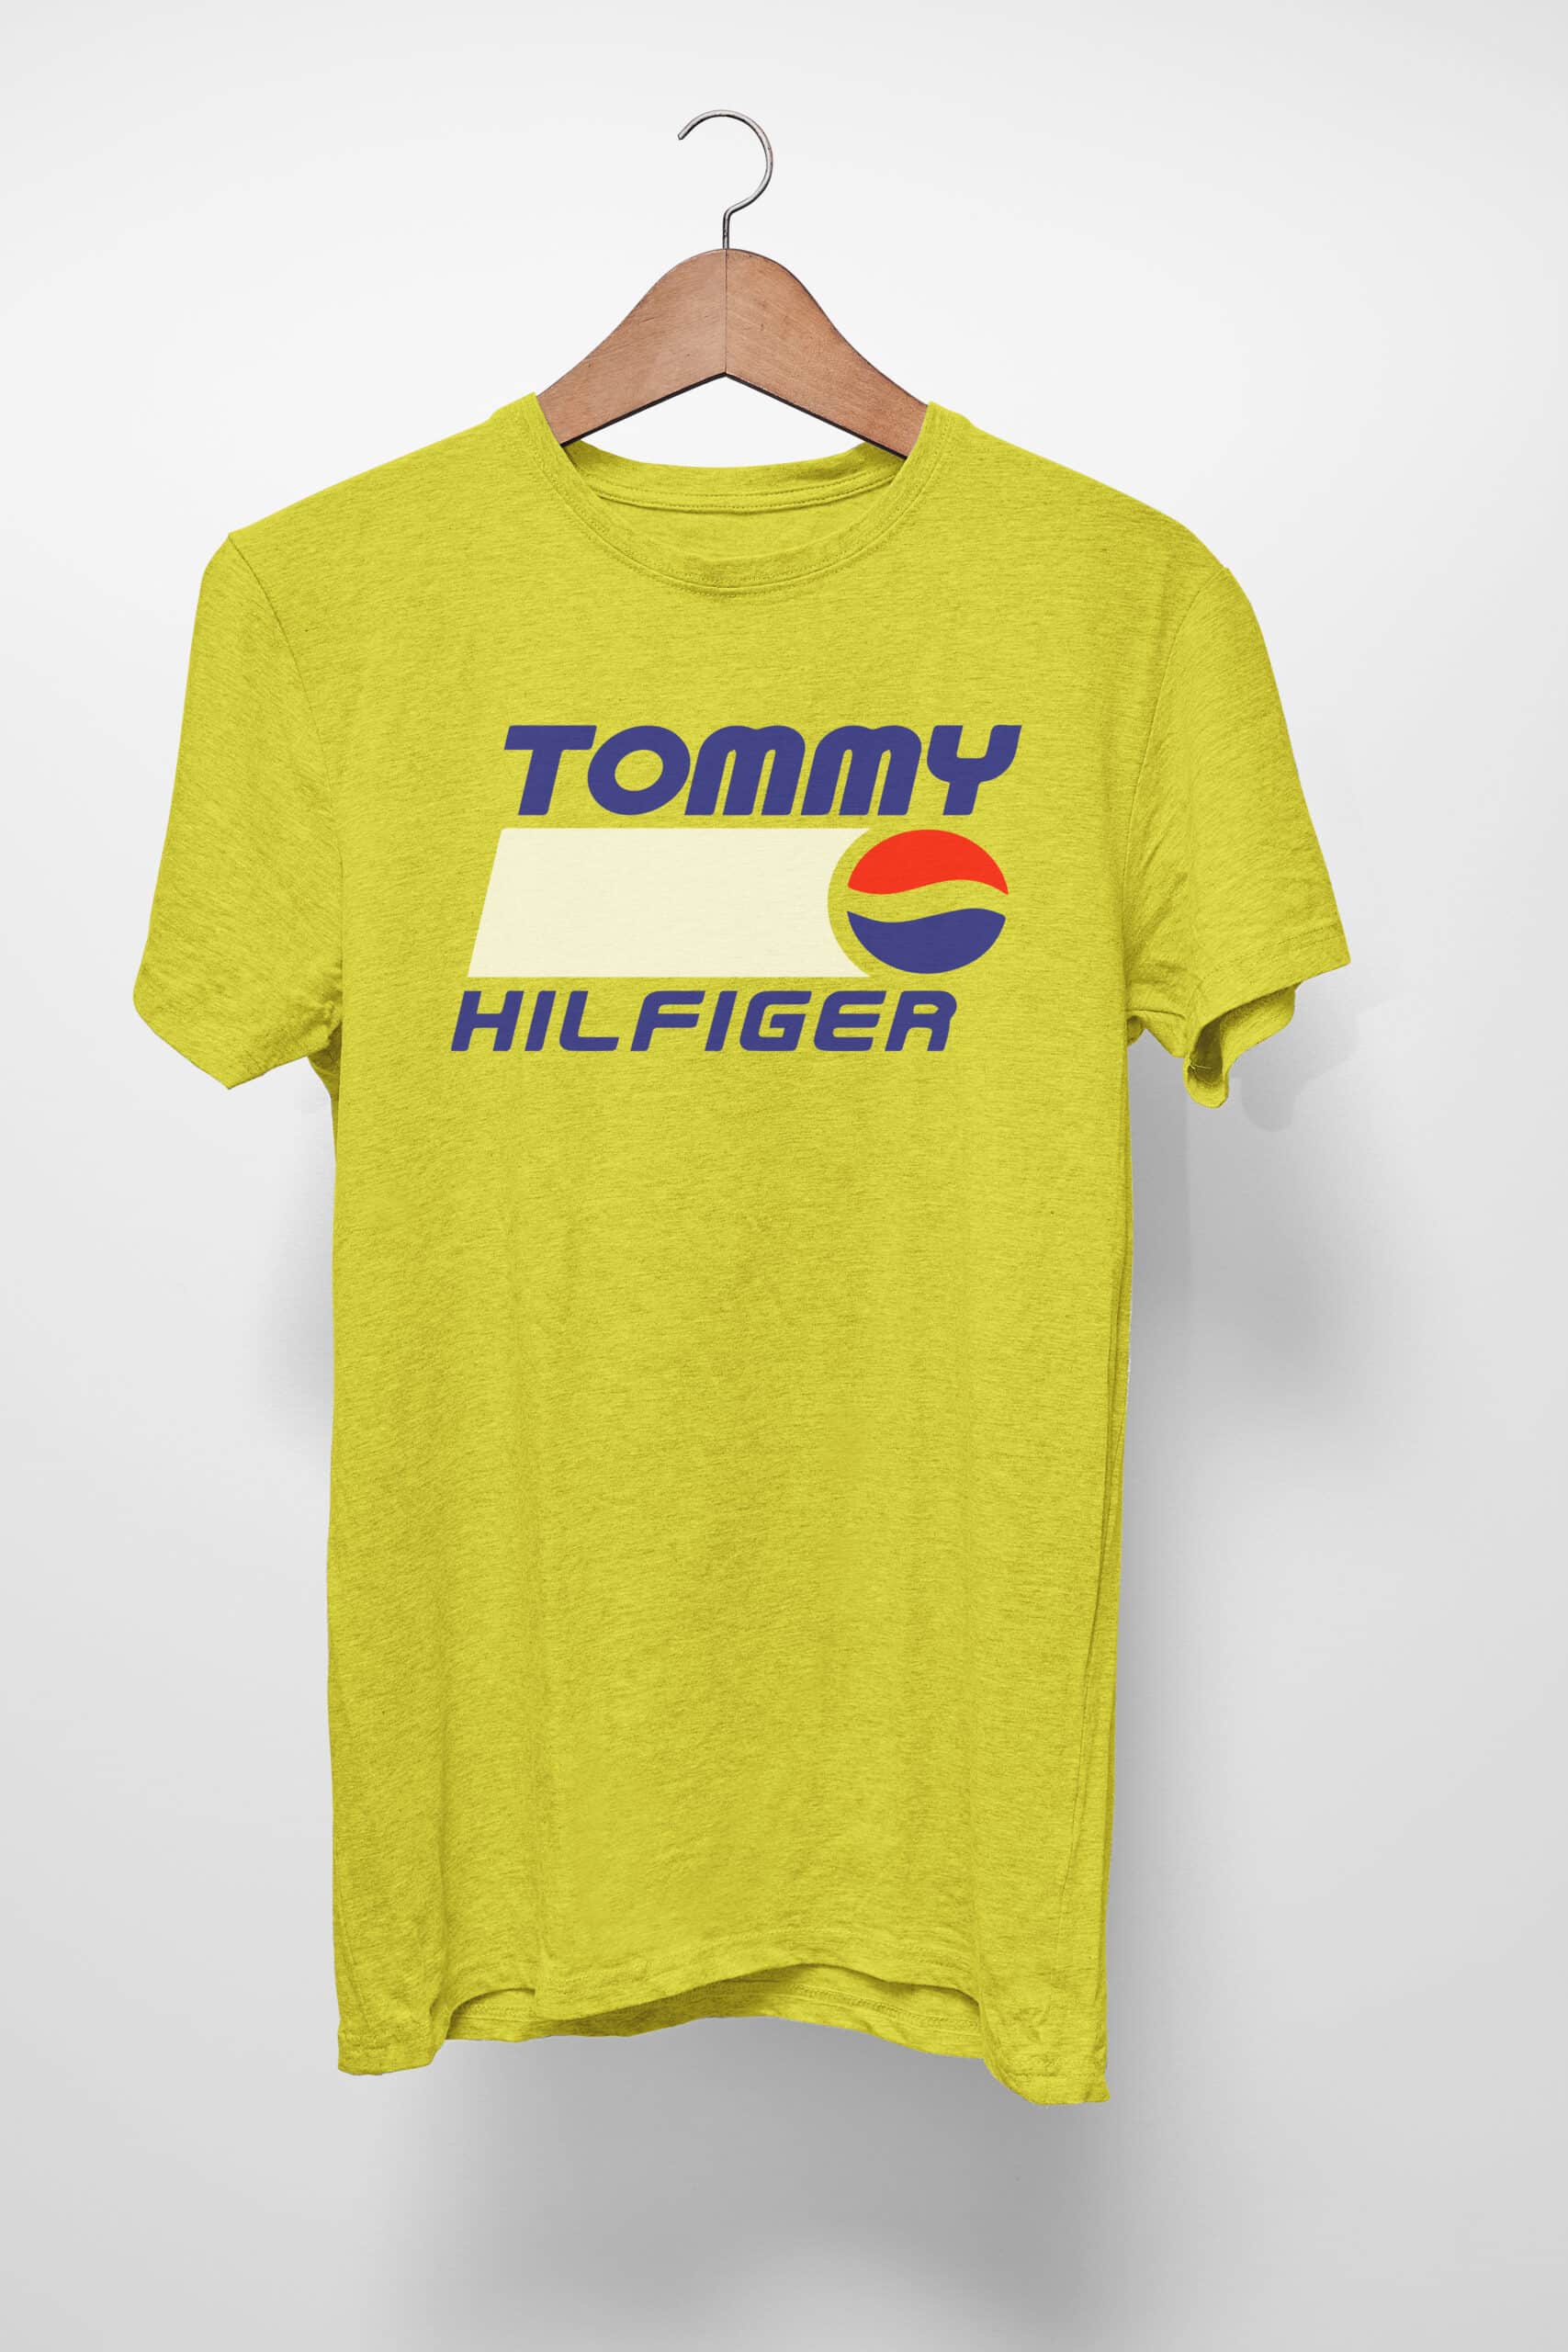 Free Tommy Hilfiger Pepsi SVG File